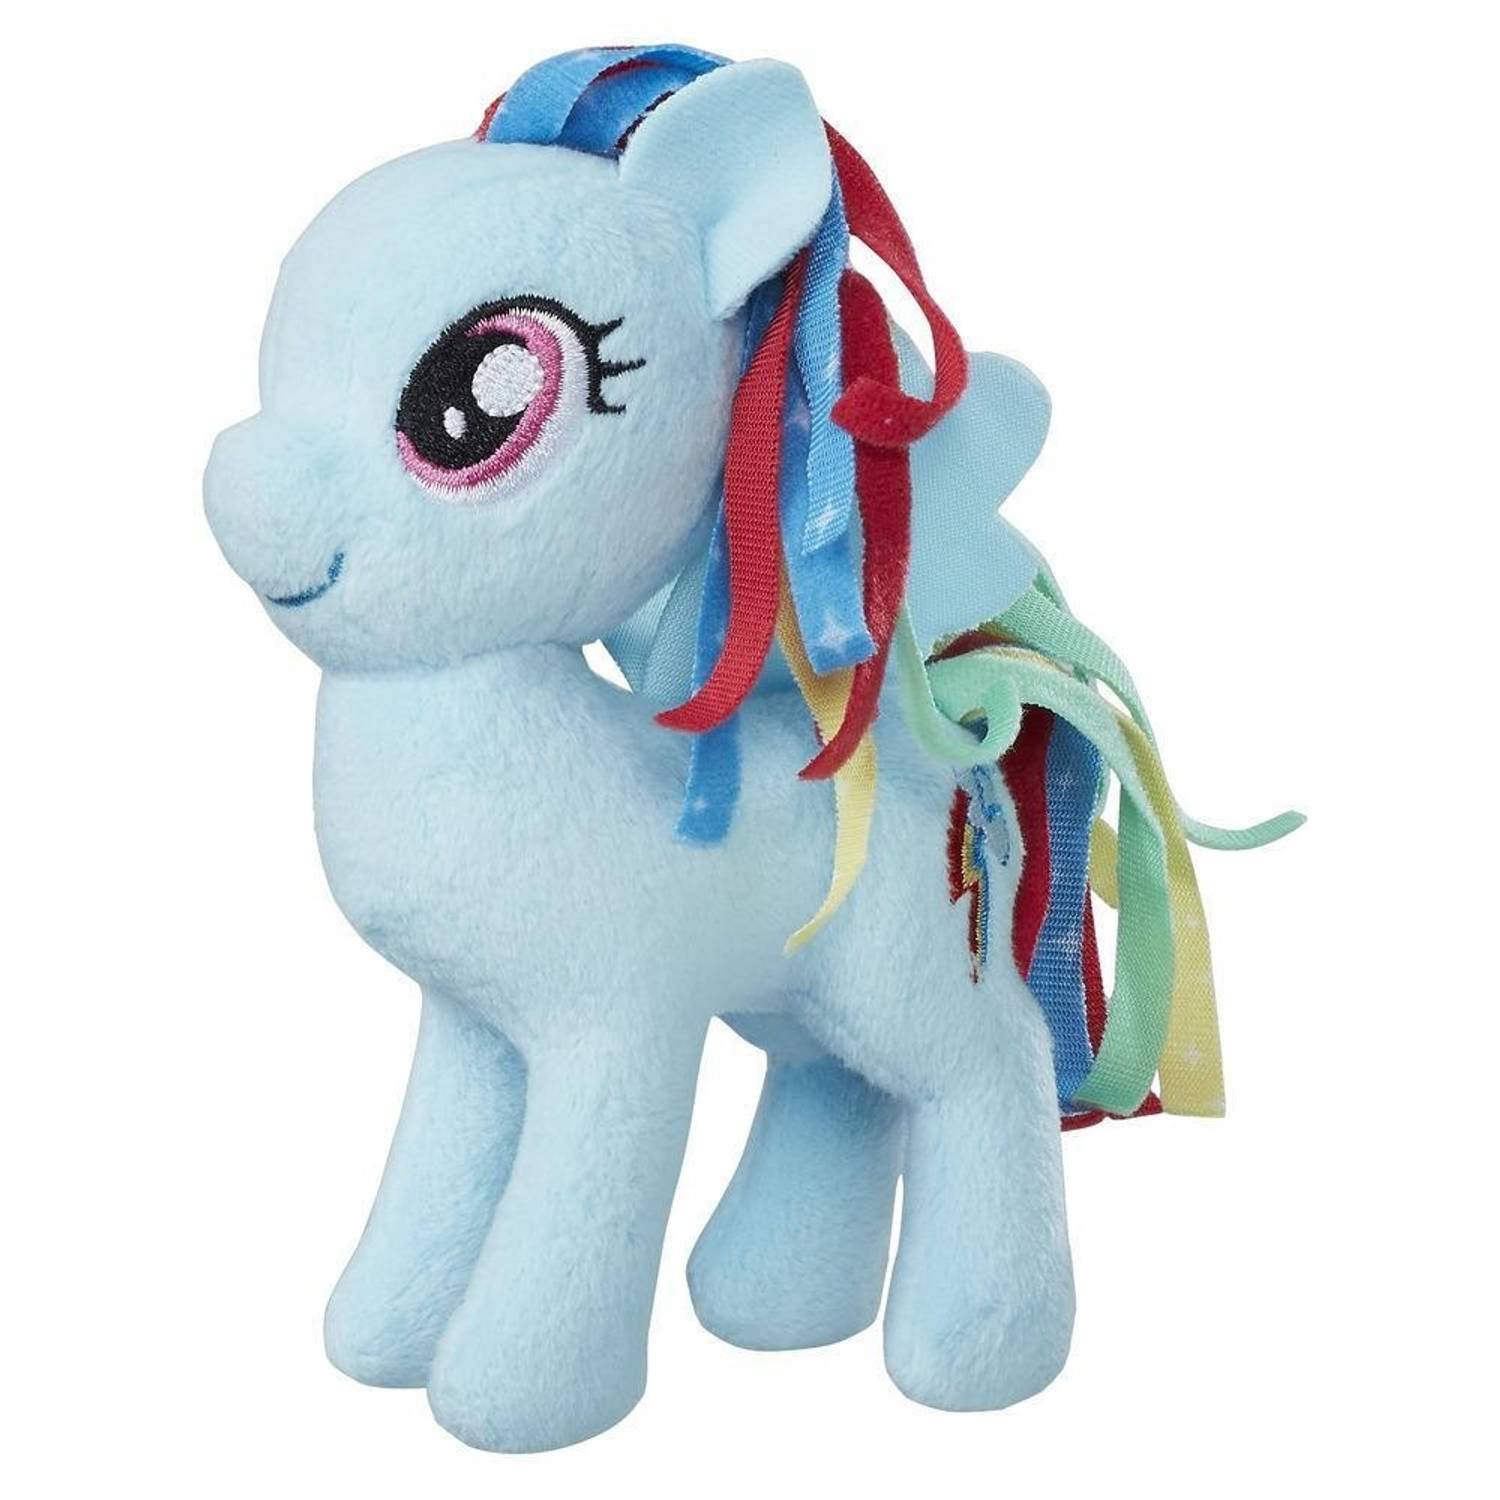 Verandering zich zorgen maken Elastisch Hasbro Knuffel My Little Pony Raibow Dash 13 cm blauw | Blokker